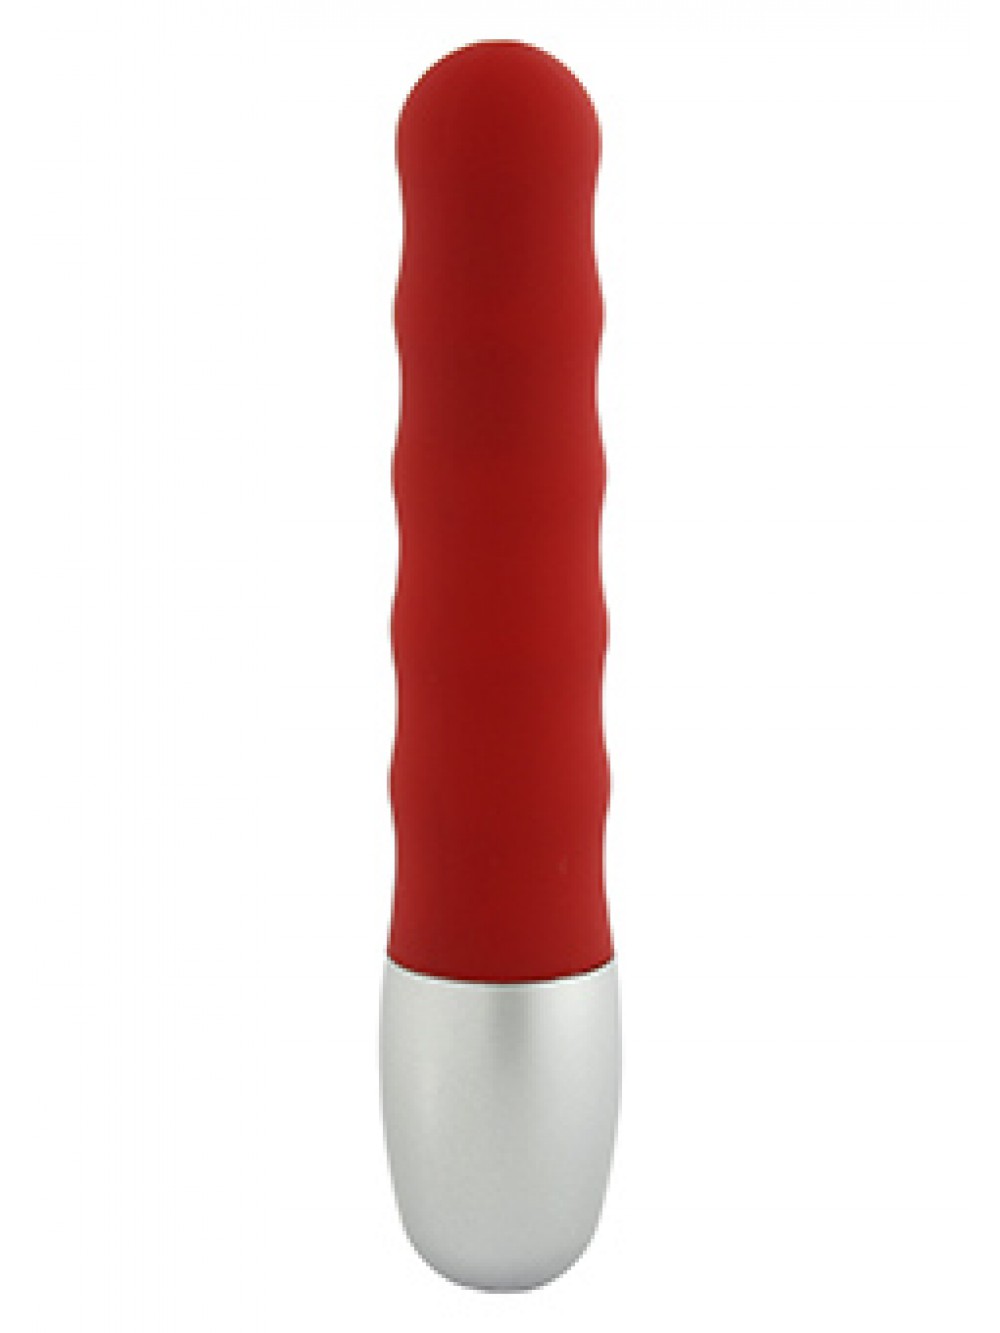 Sette Creation Mini Vibratore 8.00 x 2.00 cm in rosso nel Wellendesign, 1 pz. Pacco